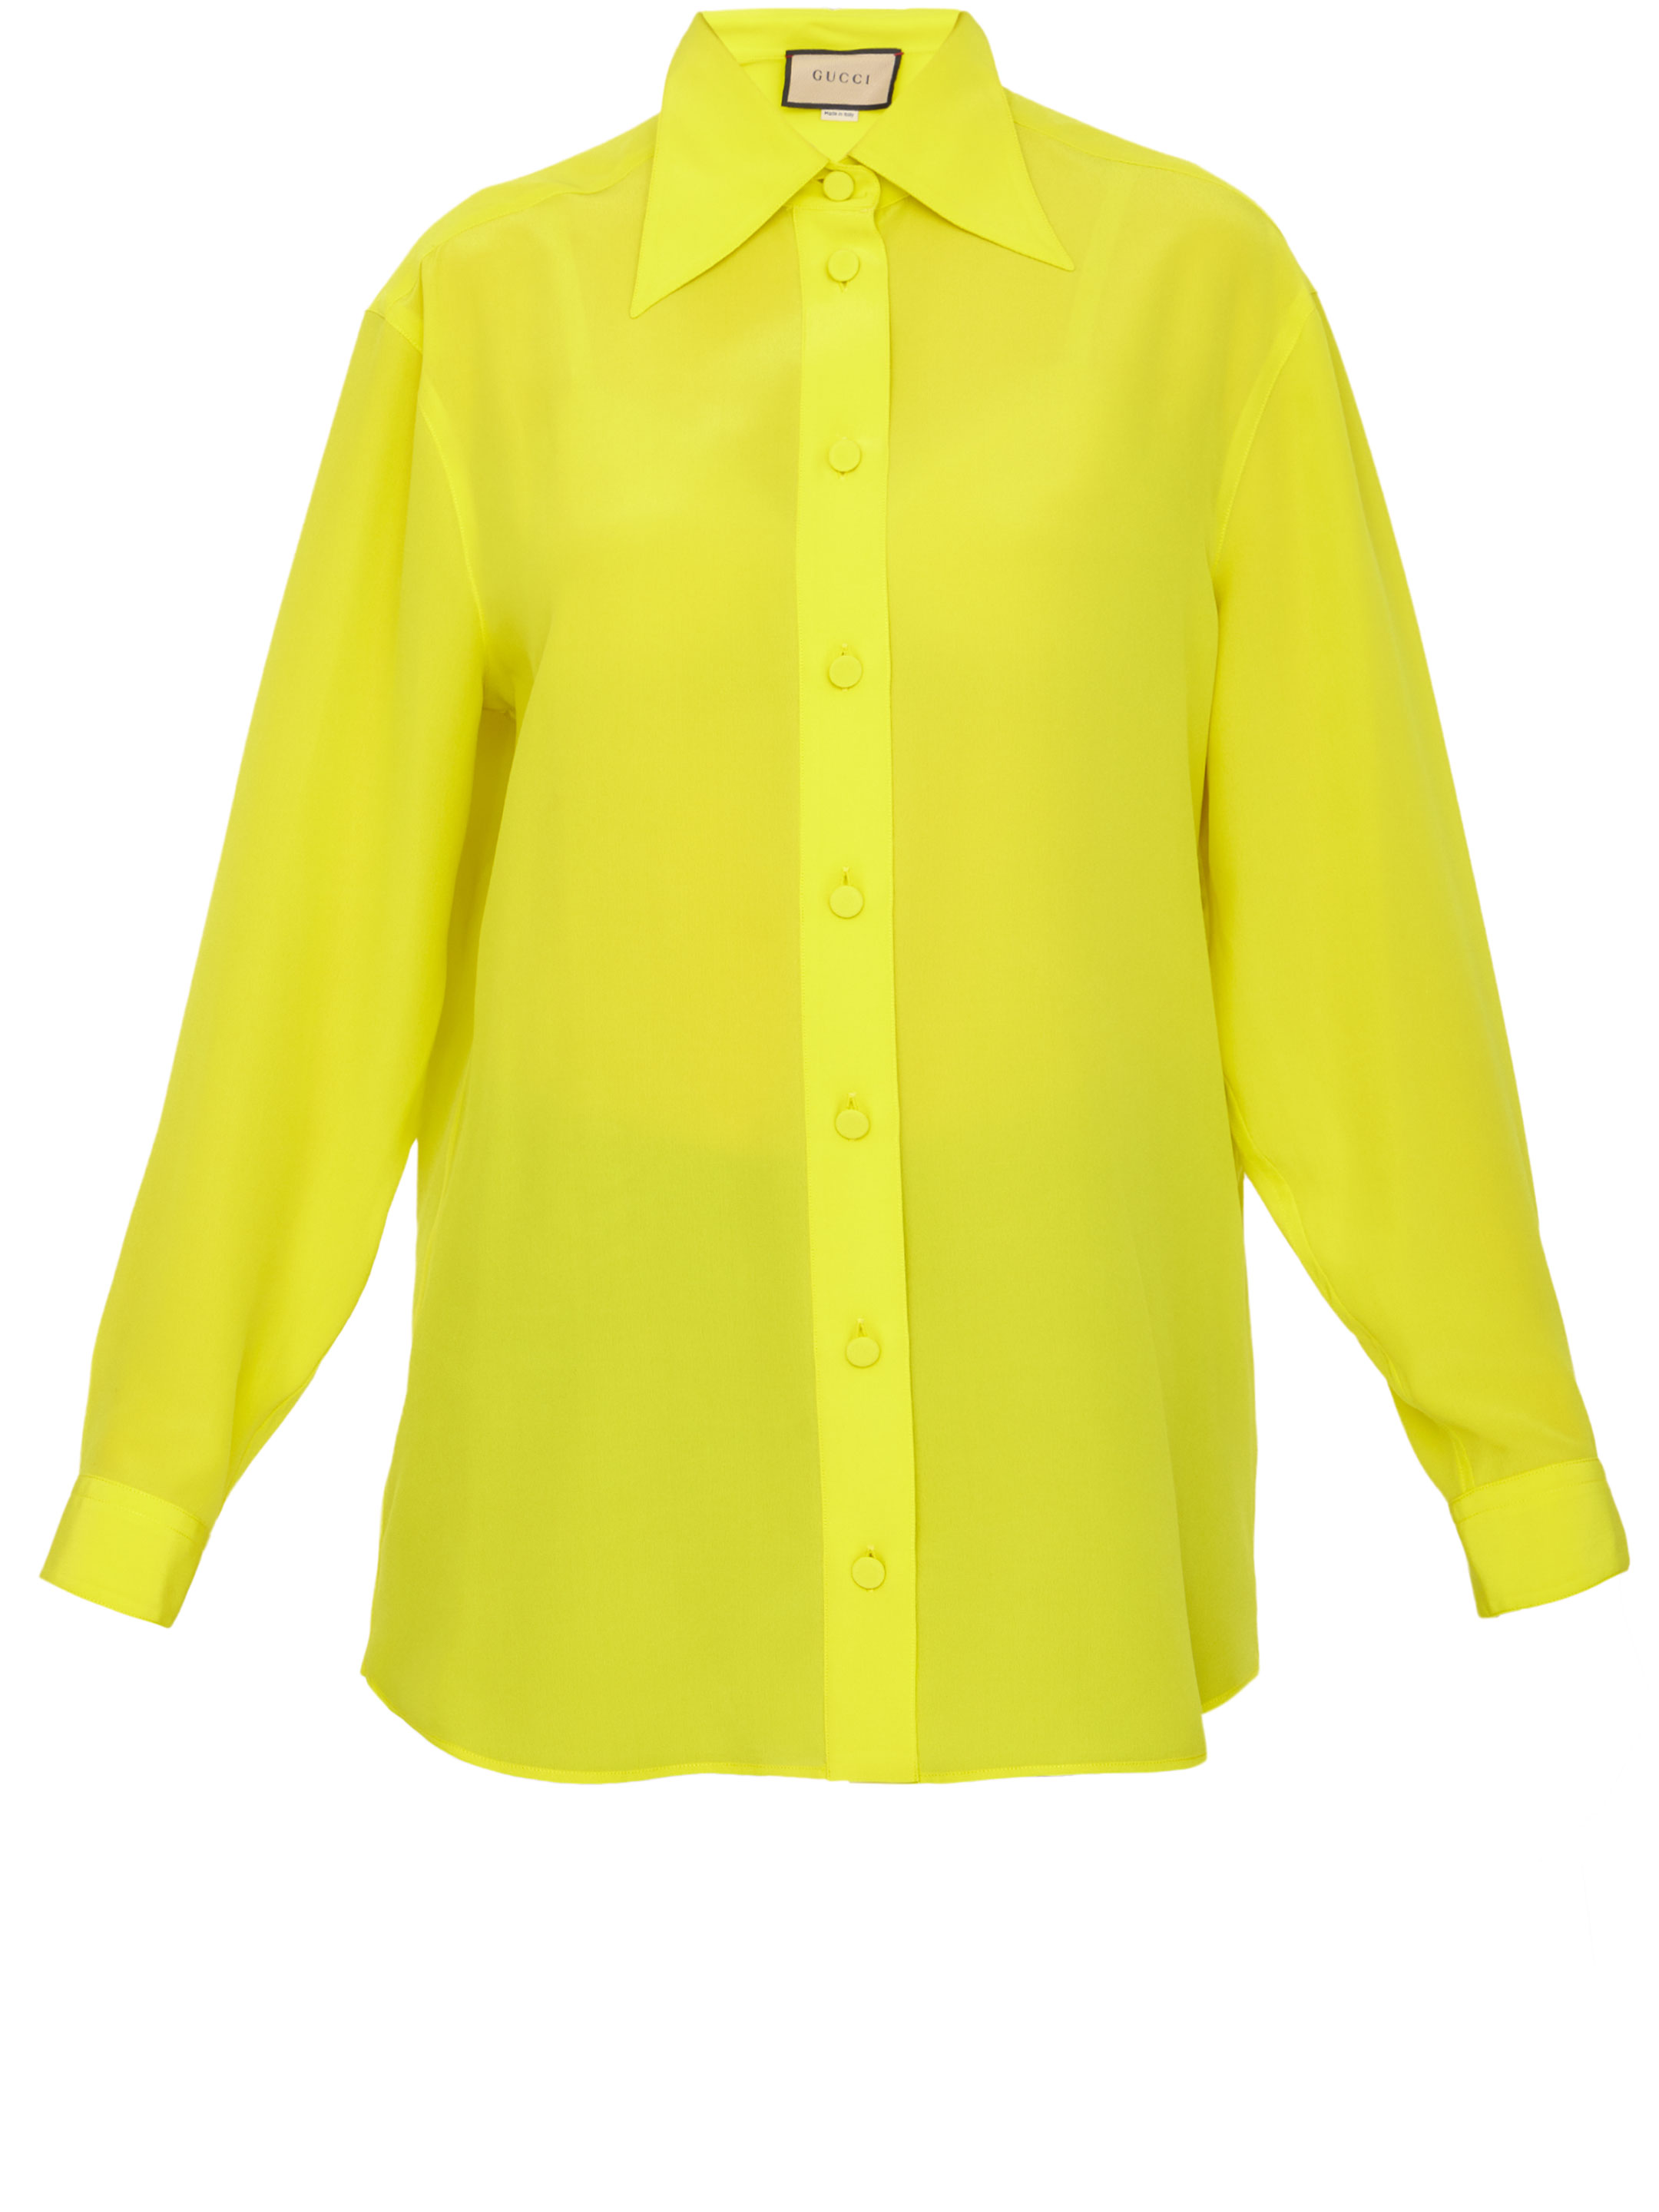 Рубашка Gucci Yellow silk, желтый